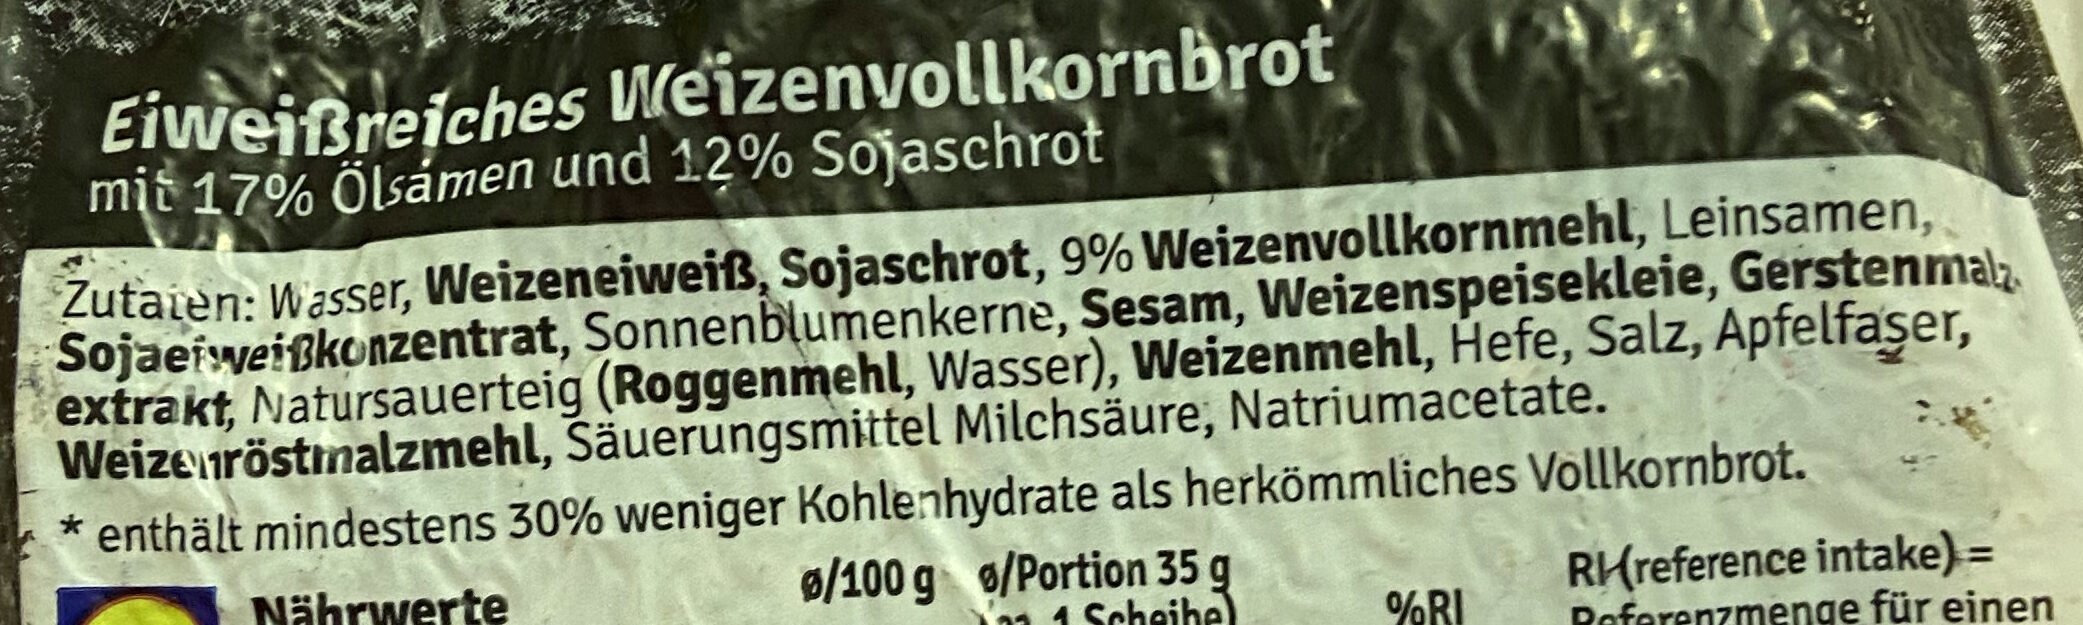 Eiweissbrot - Ingredients - de